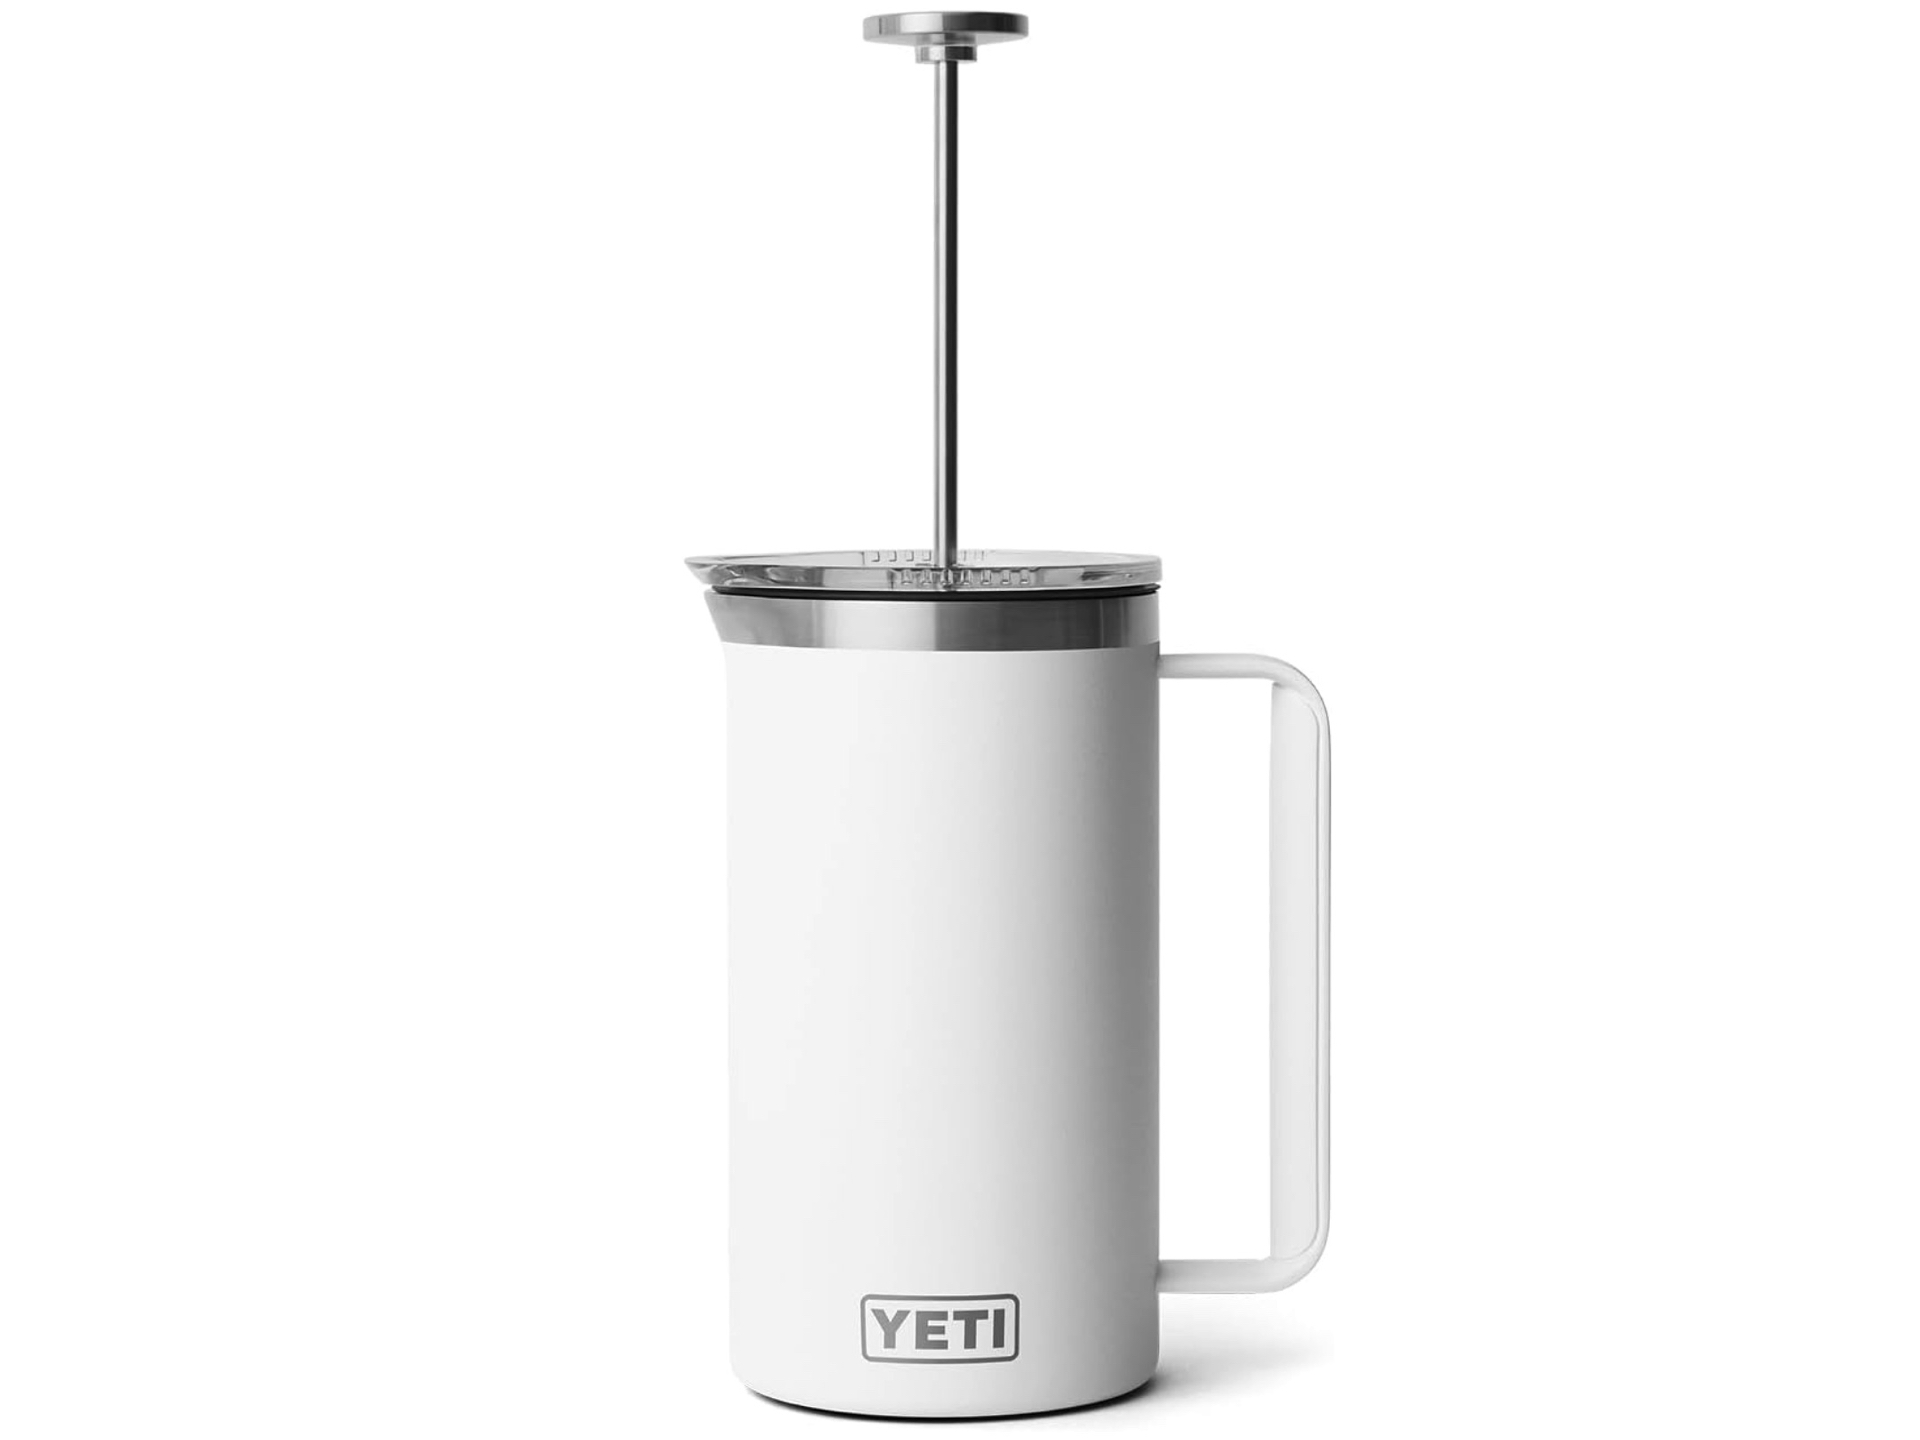 yeti-rambler-34-oz-french-press-coffee-maker